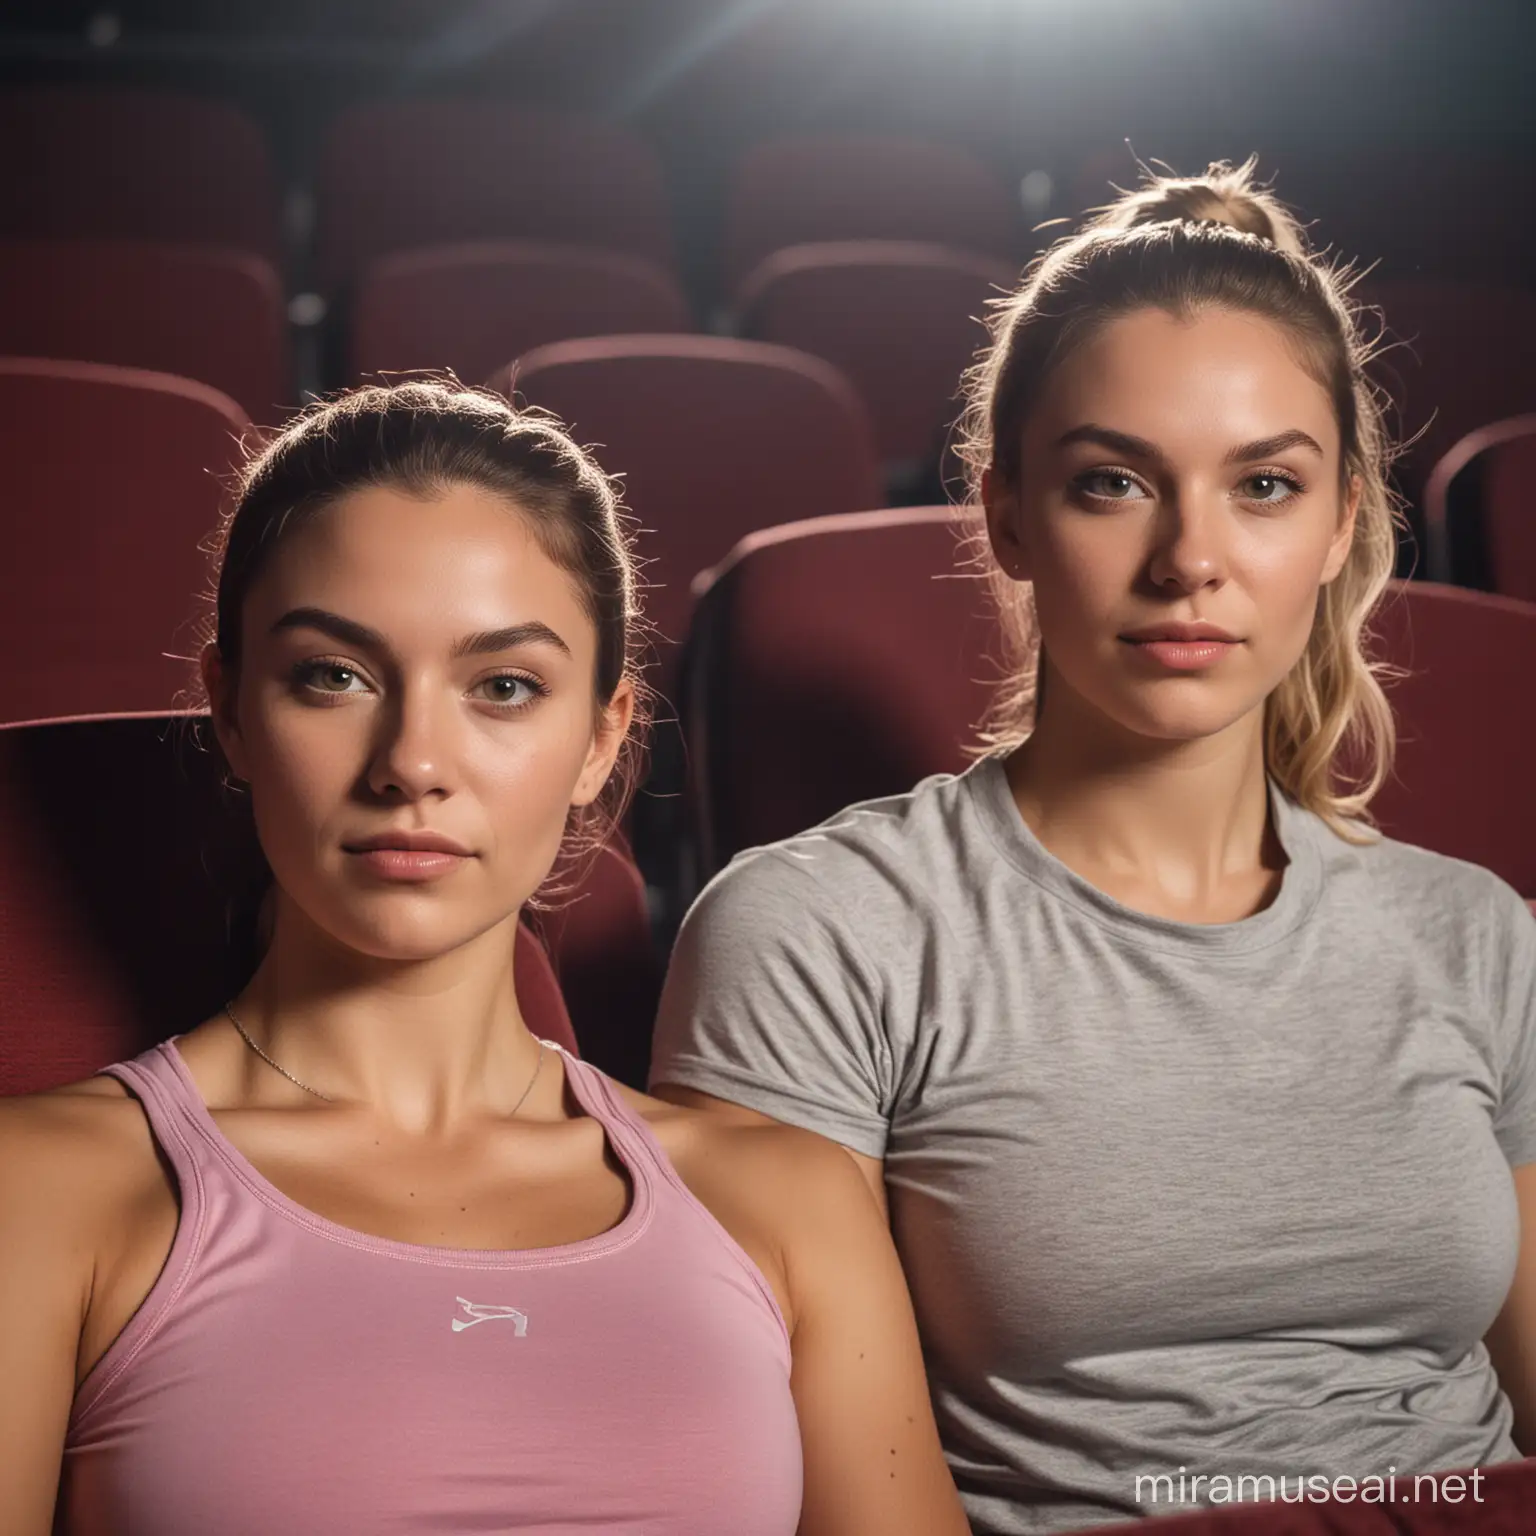 Two Women in Fitness Attire Conversing in Empty Movie Theatre